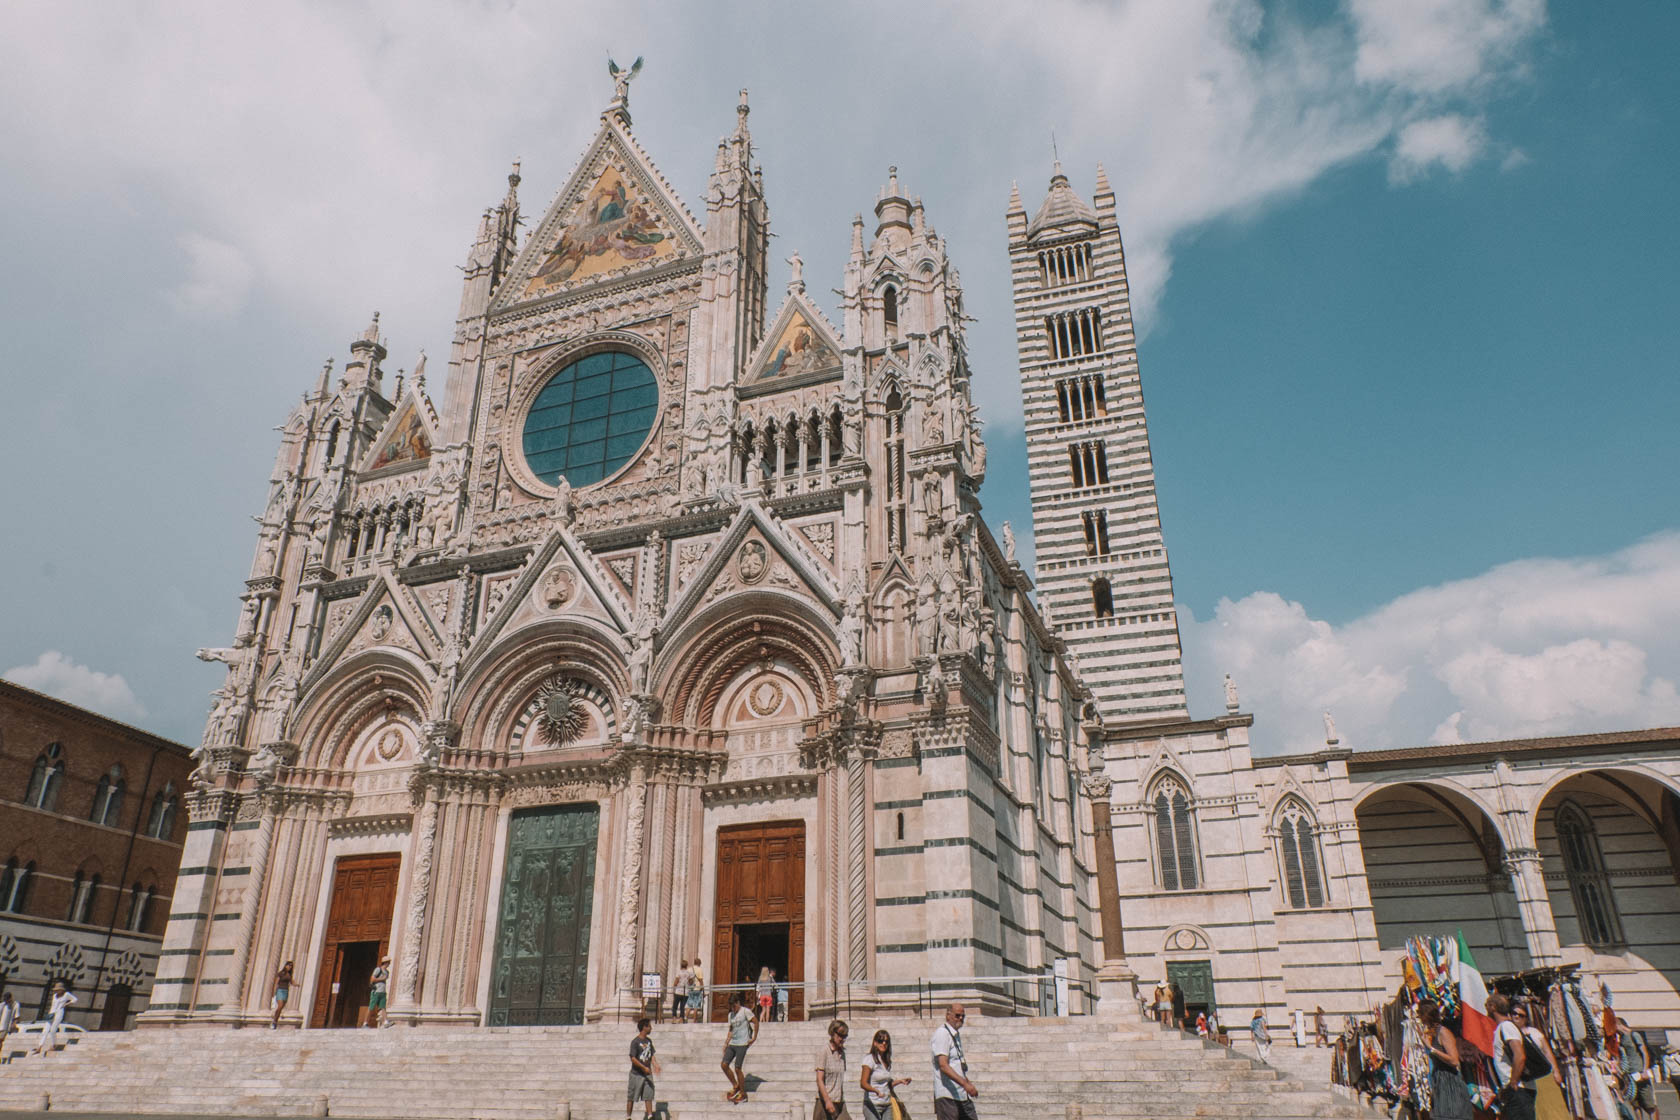 Cathedral Santa Maria Assunta, Siena, Italy